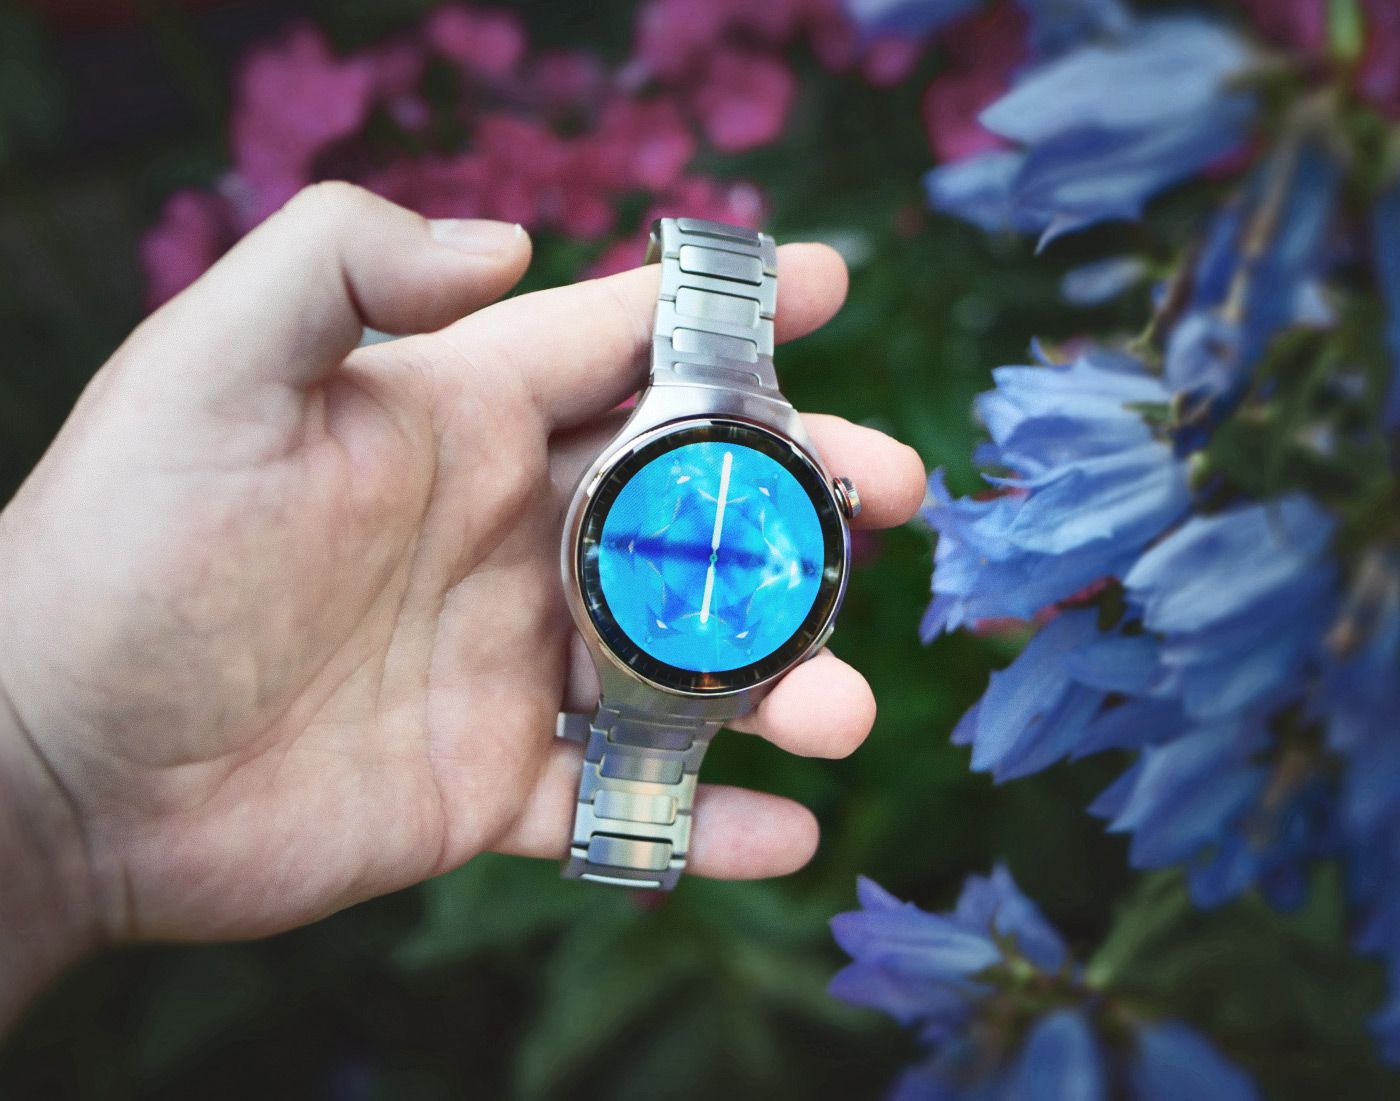 Обзор HUAWEI Watch 4 Pro: умные часы, следящие за вашим здоровьем на новом  уровне / Носимая электроника